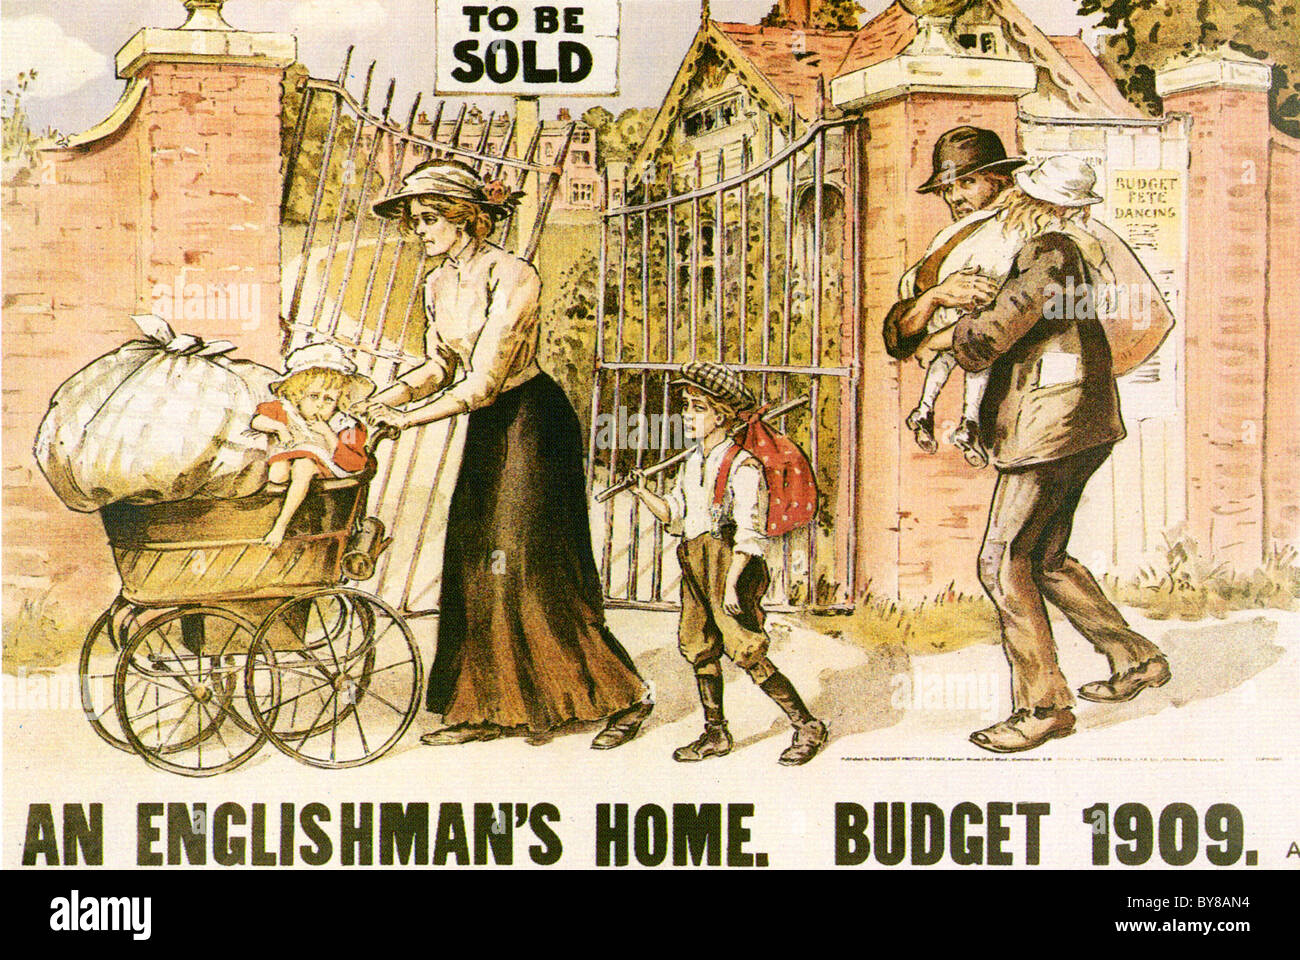 Un Anglais Accueil du parti conservateur et unioniste poster critiquant le 1909 People's Budget présenté par les libéraux d'Asquith Banque D'Images